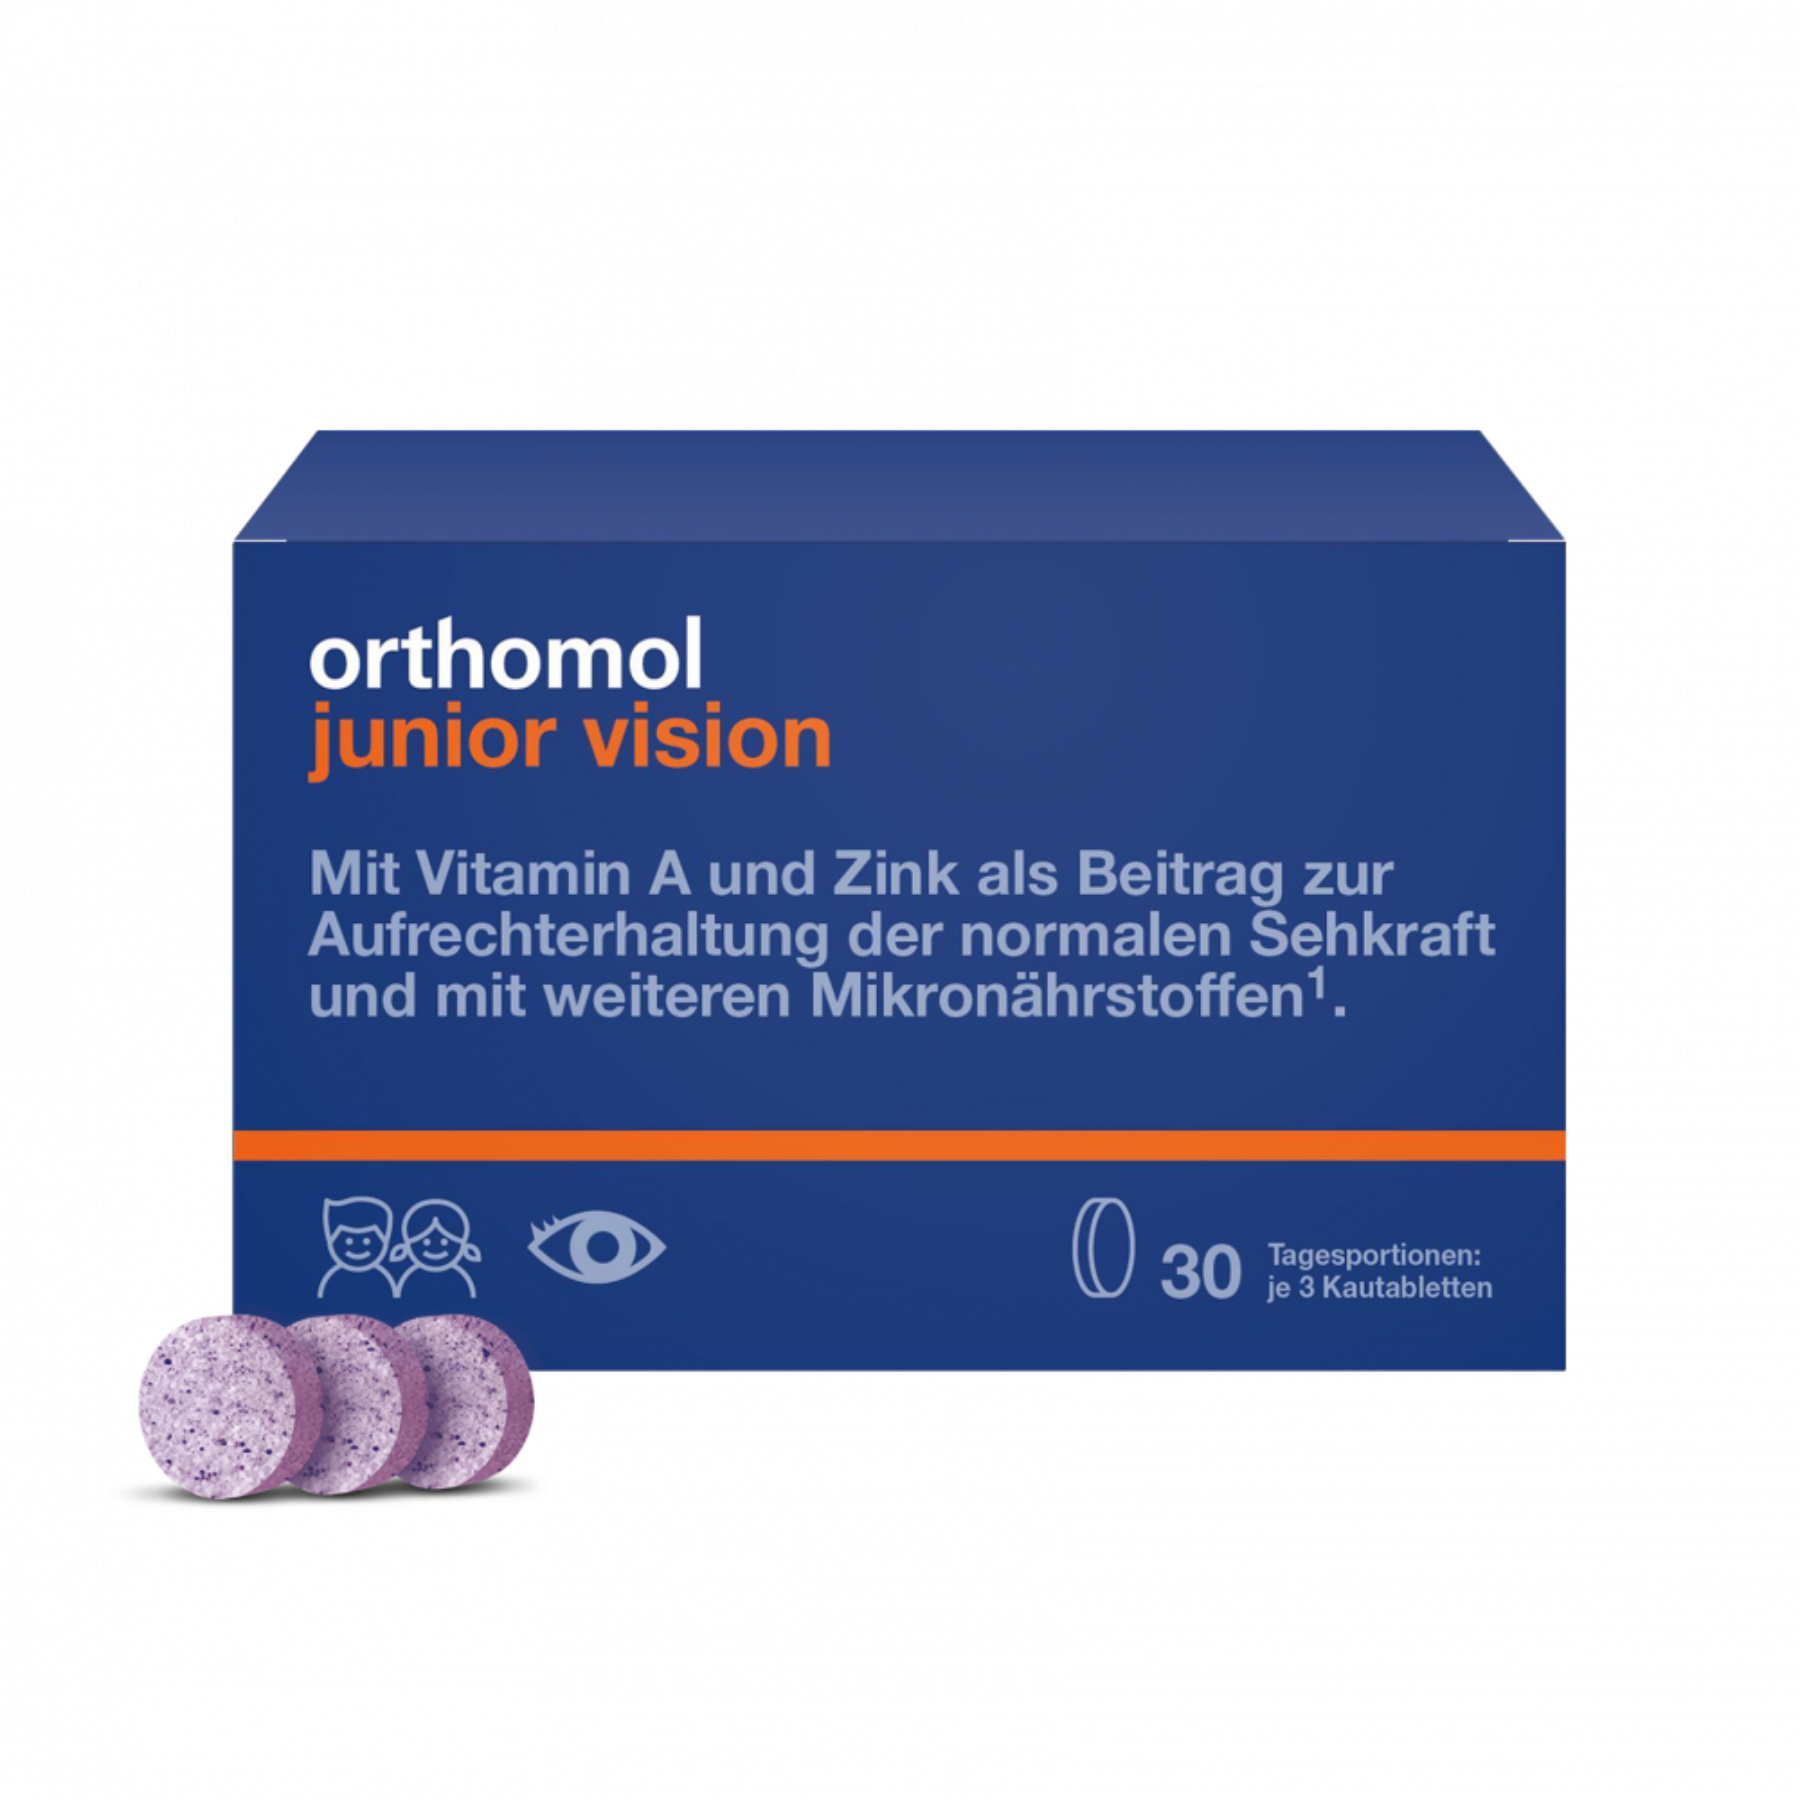 Жевательные таблетки со вкусом черники-персика Orthomol Junior Vision (для укрепления зрения), 30 шт